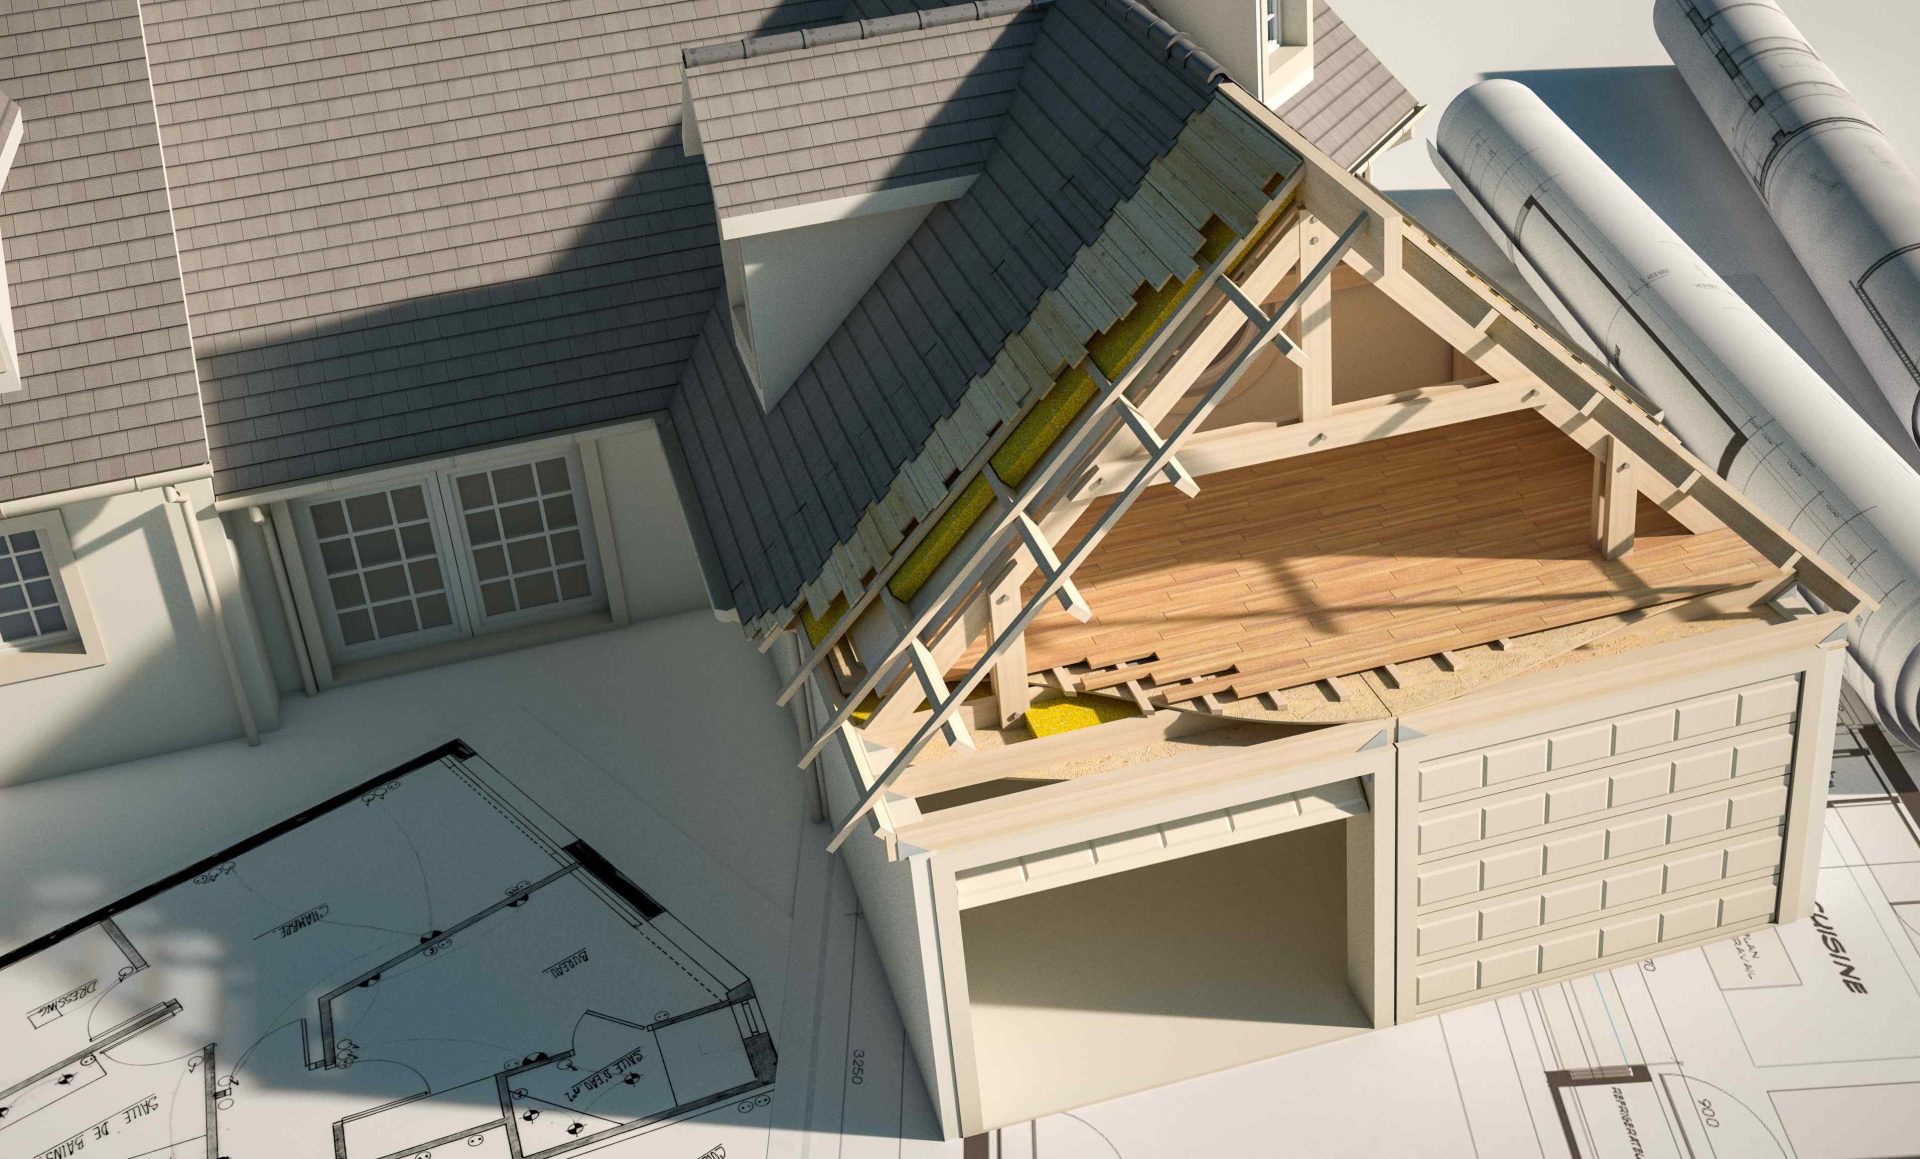 Illustration eines Einfamilienhauses, das auf einem Bauplan steht und dessen Dach halb eingedeckt ist